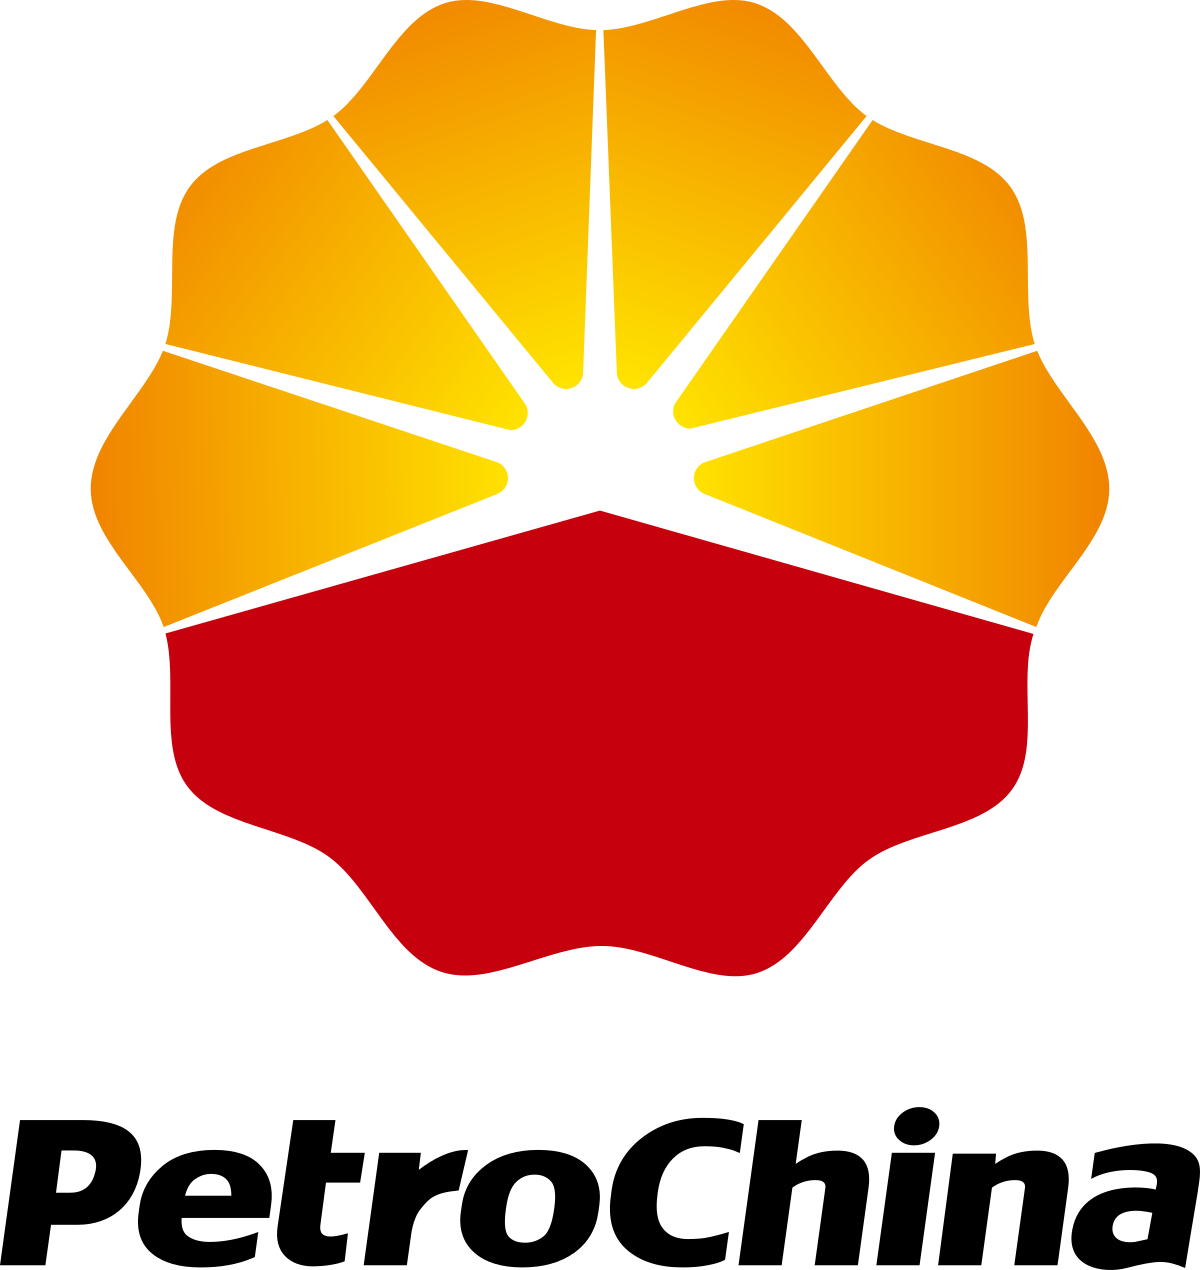 PetroChina